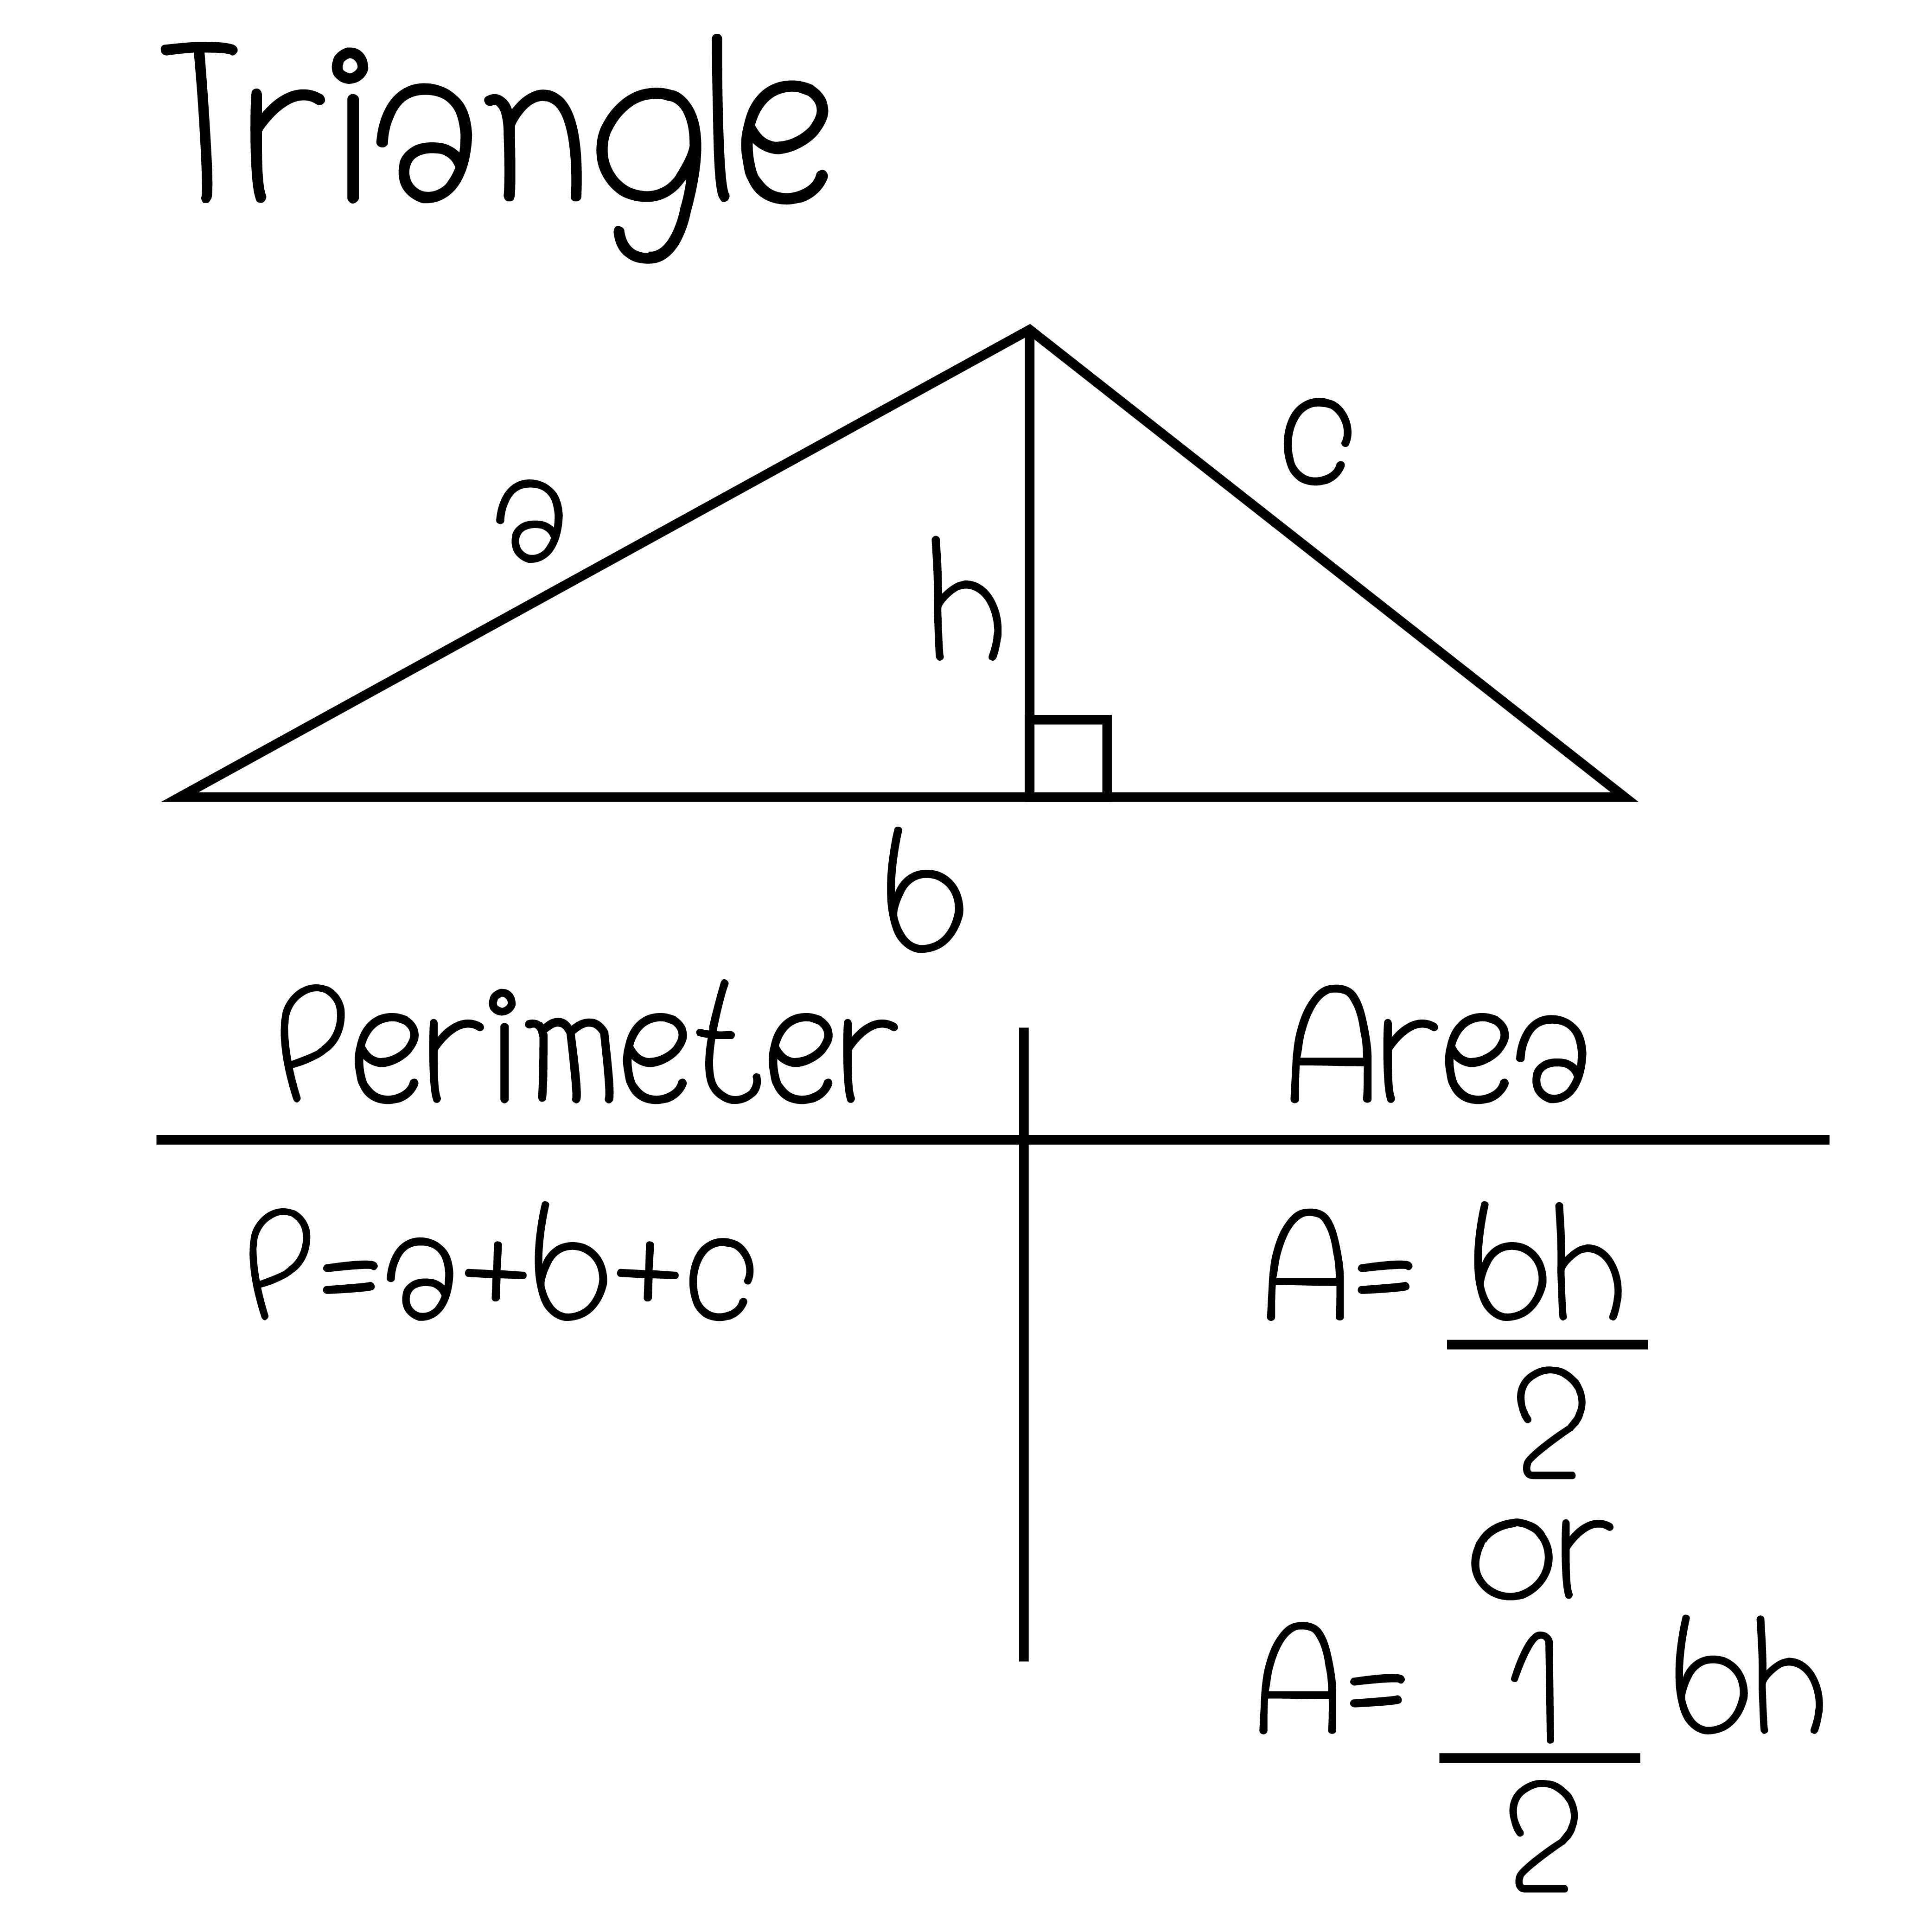 rumus luas segitiga